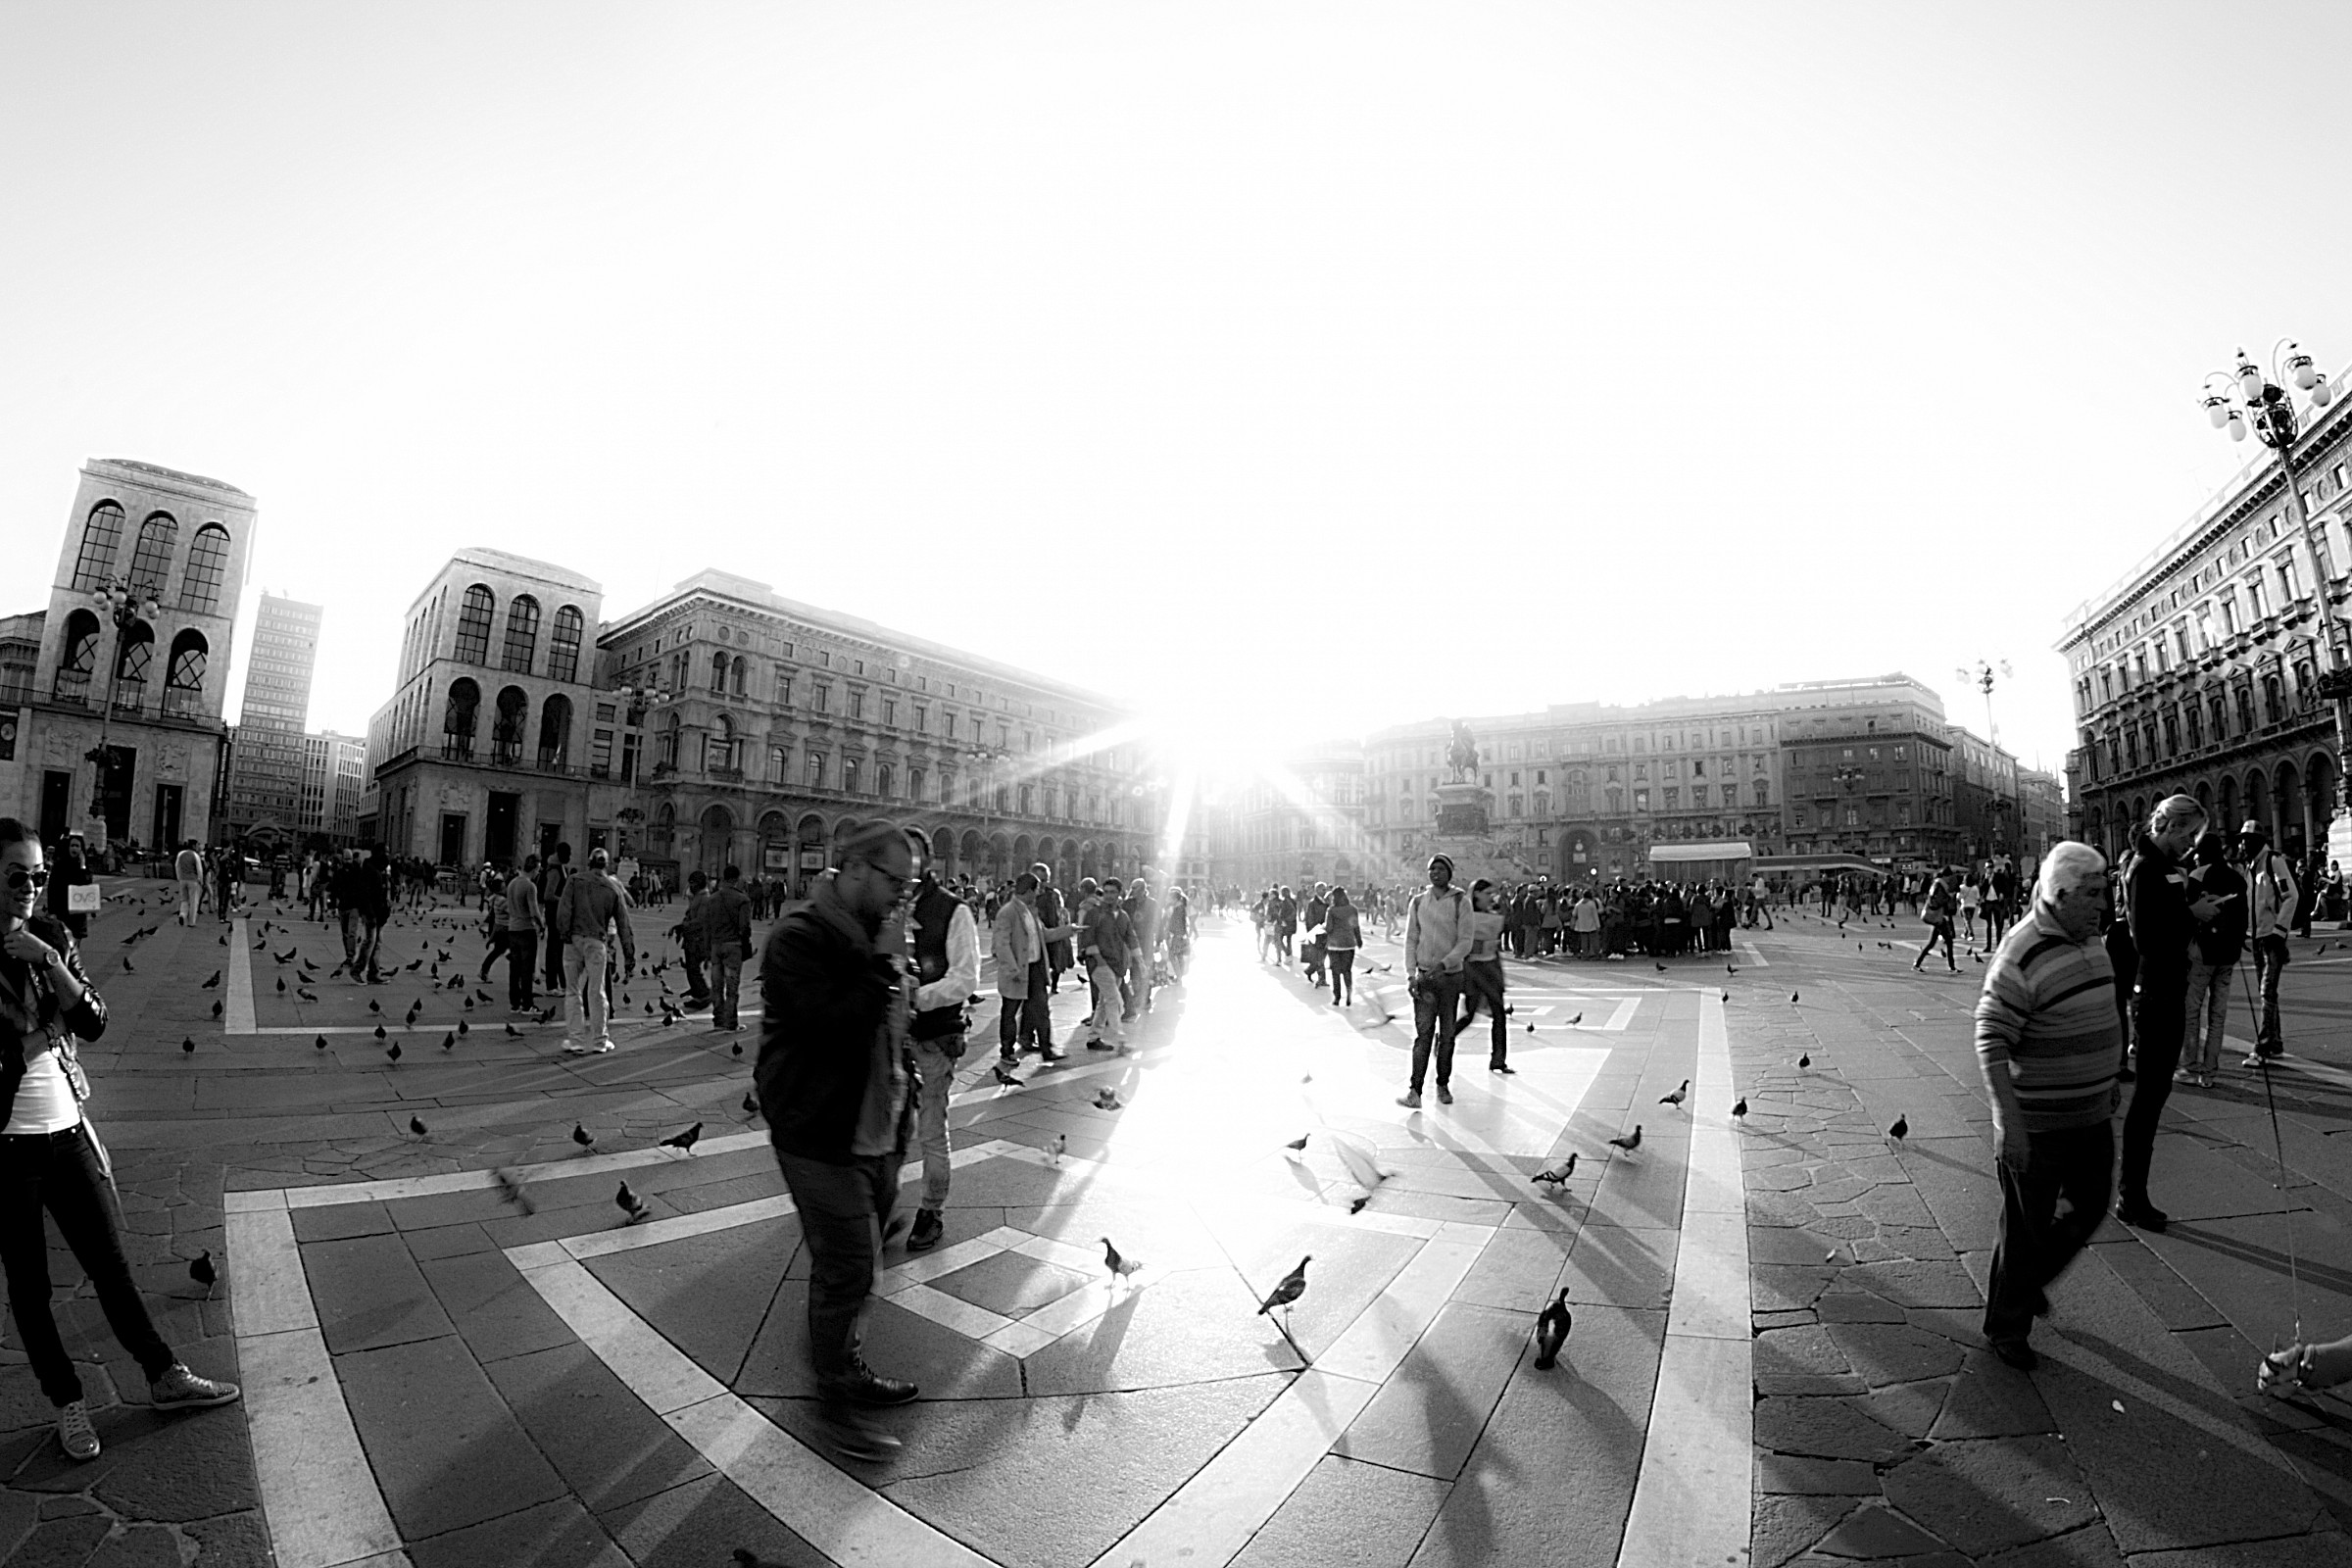 Piazza del Duomo in Milan...